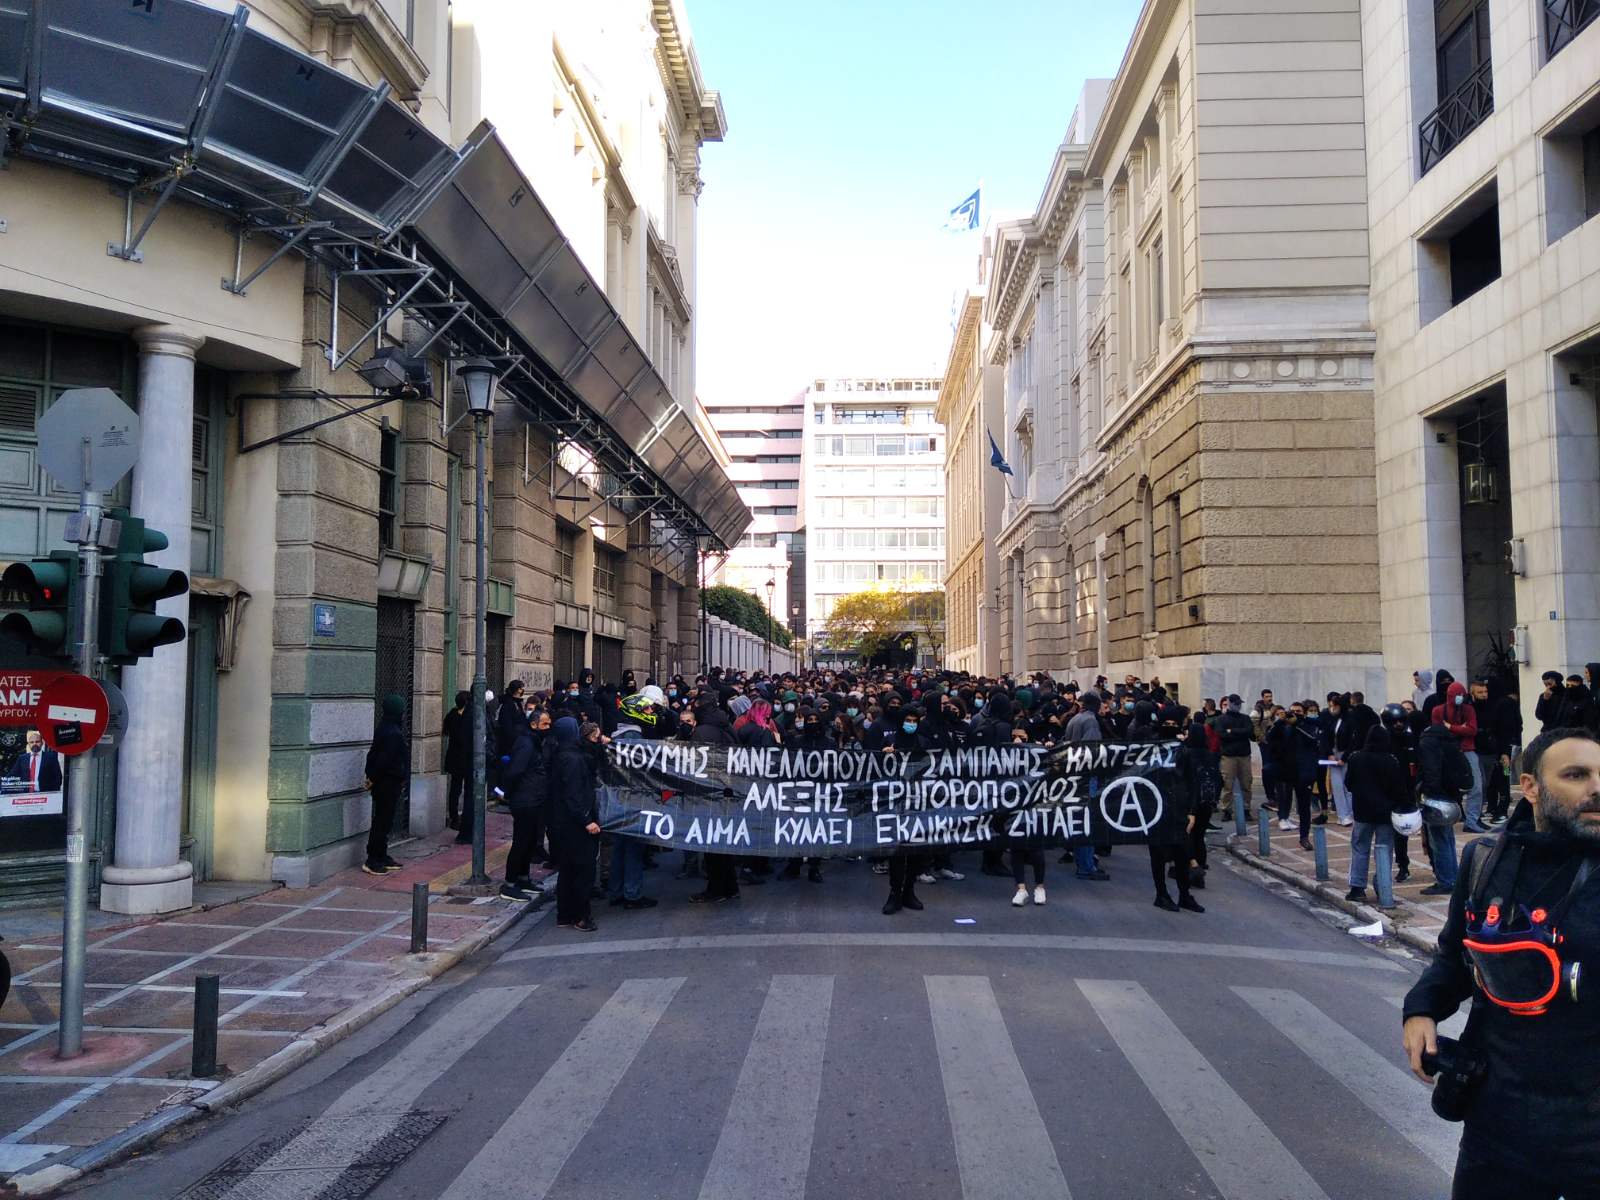 Τρεις συλλήψεις και έντεκα προσαγωγές στη μαθητική- φοιτητική διαδήλωση στην Αθήνα για τα 13 χρόνια από τη δολοφονία του Α. Γρηγορόπουλου